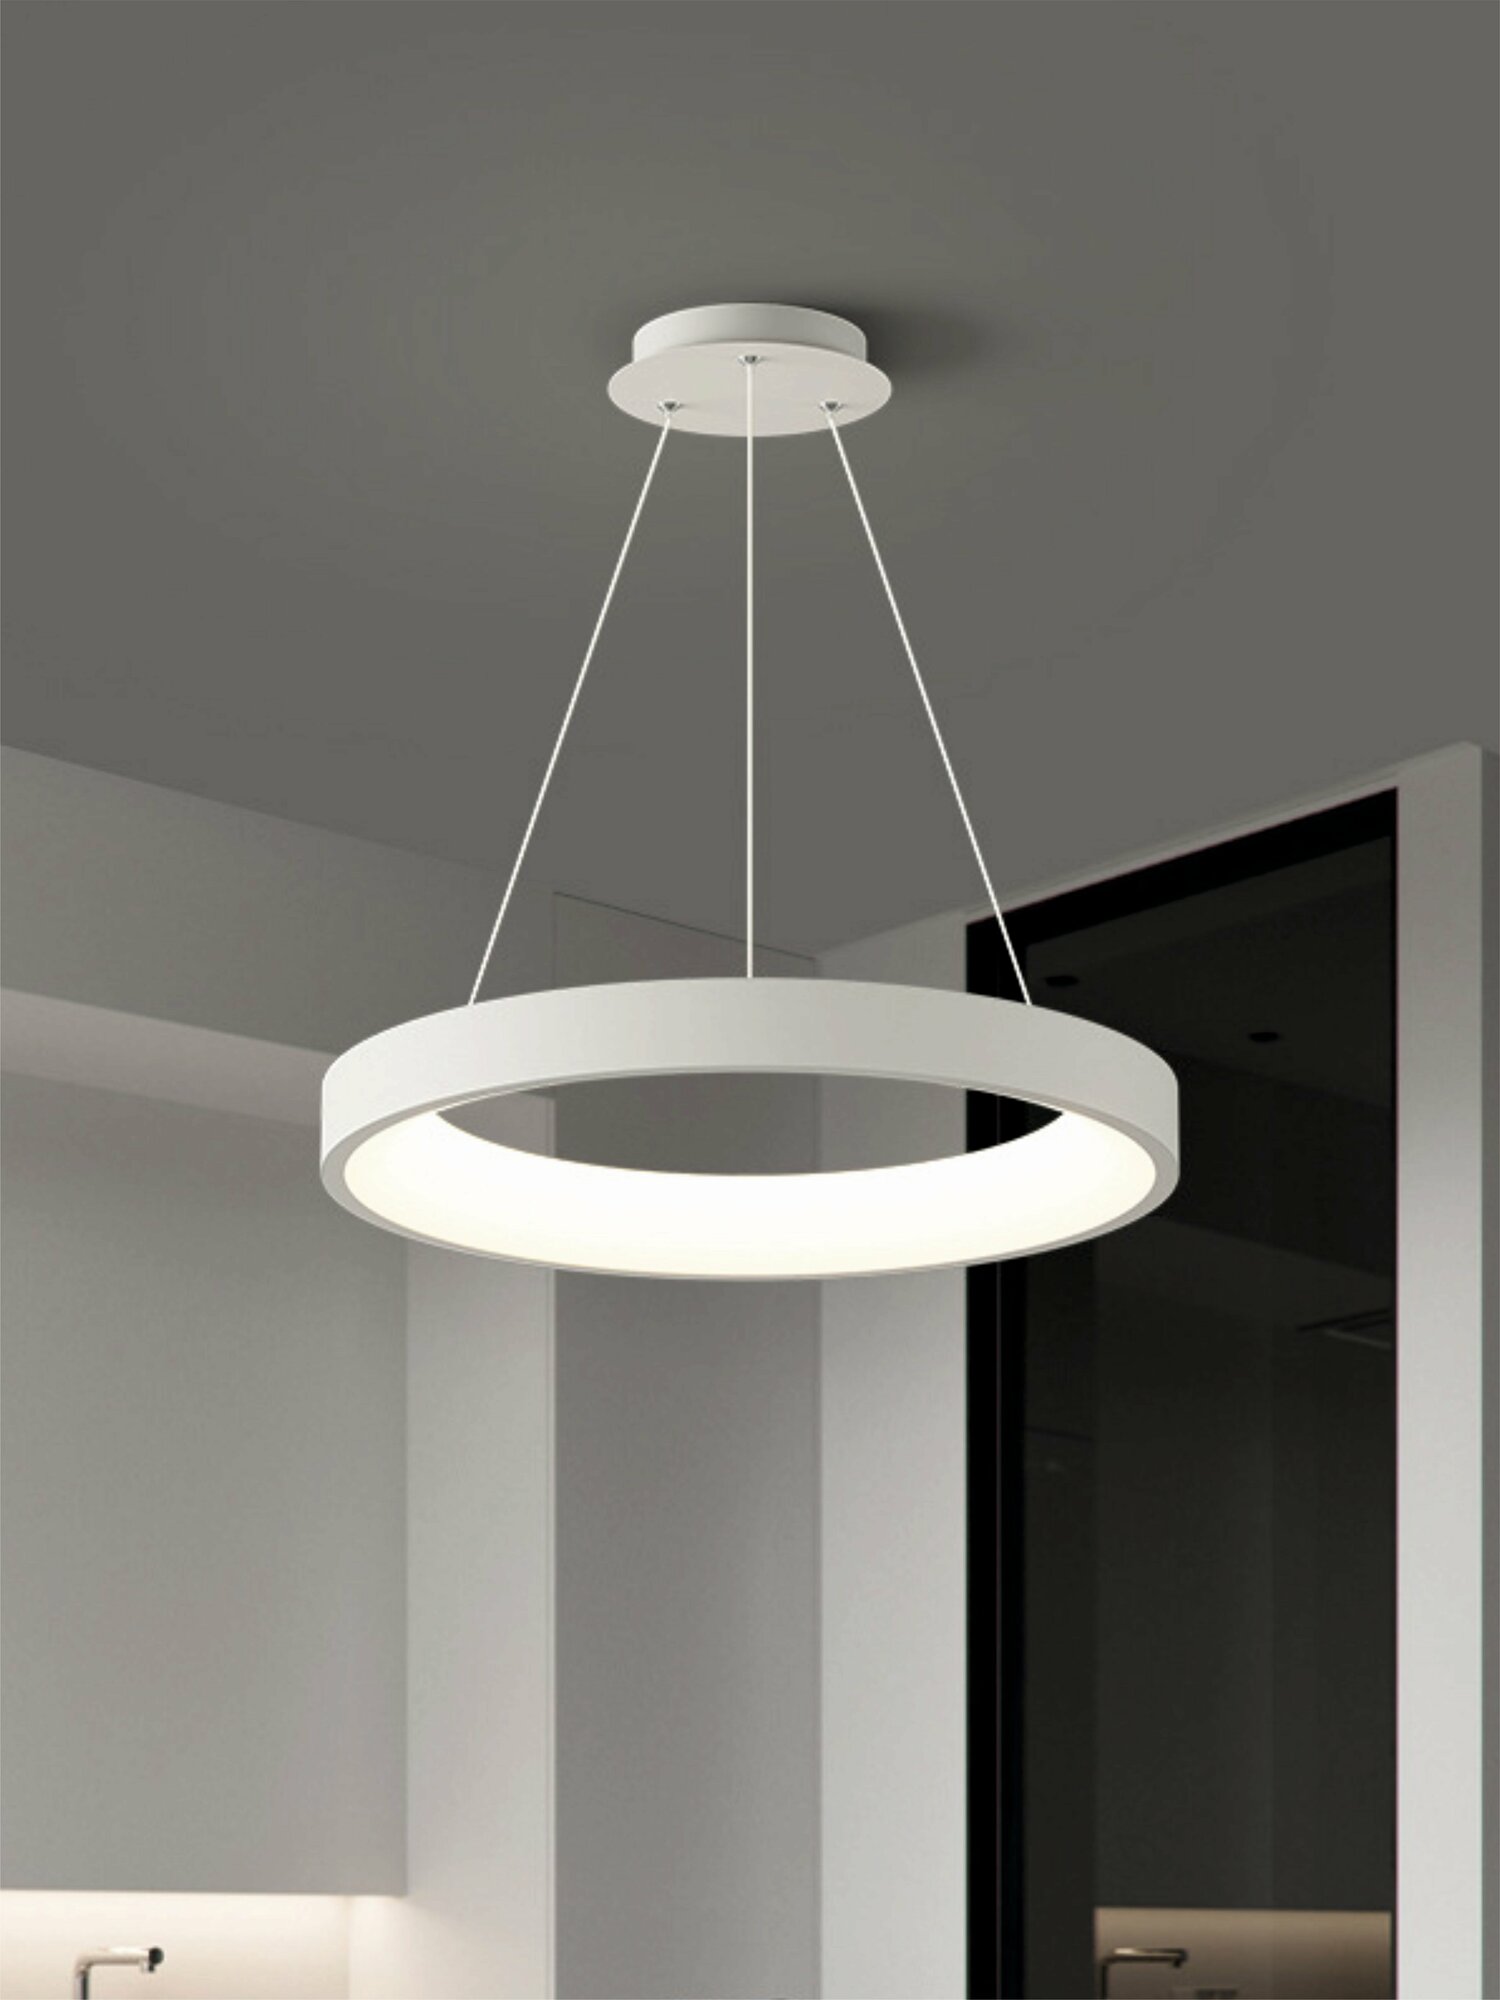 Светодиодная люстра подвесная VertexHome VER-6060/1 стиль модерн, на кухню, в детскую, в спальню, в гостиную